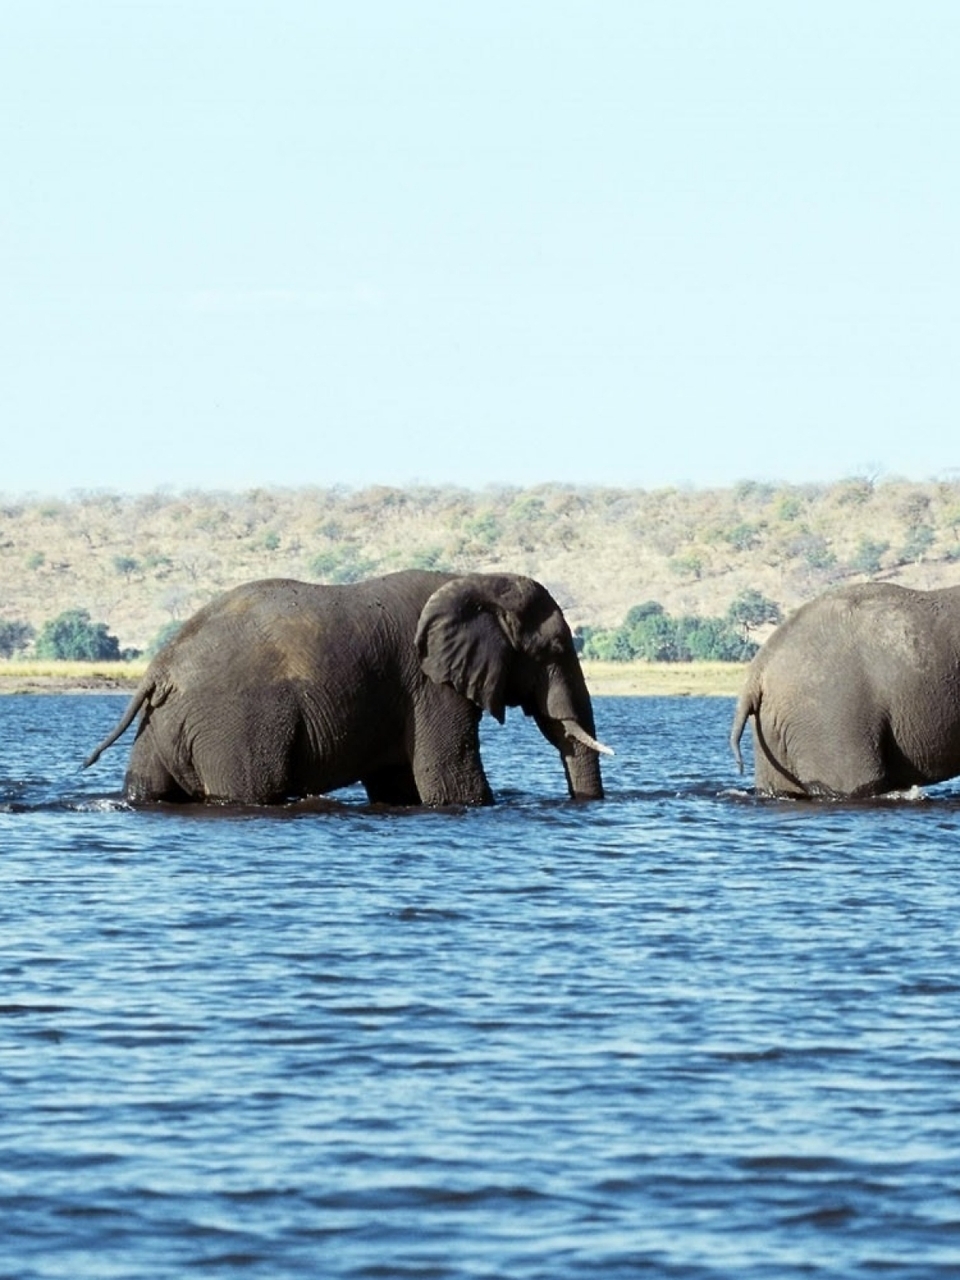 Elephant river. Слоны. Слон в воде. Слоны на водопое. Слон со слоненком в море.